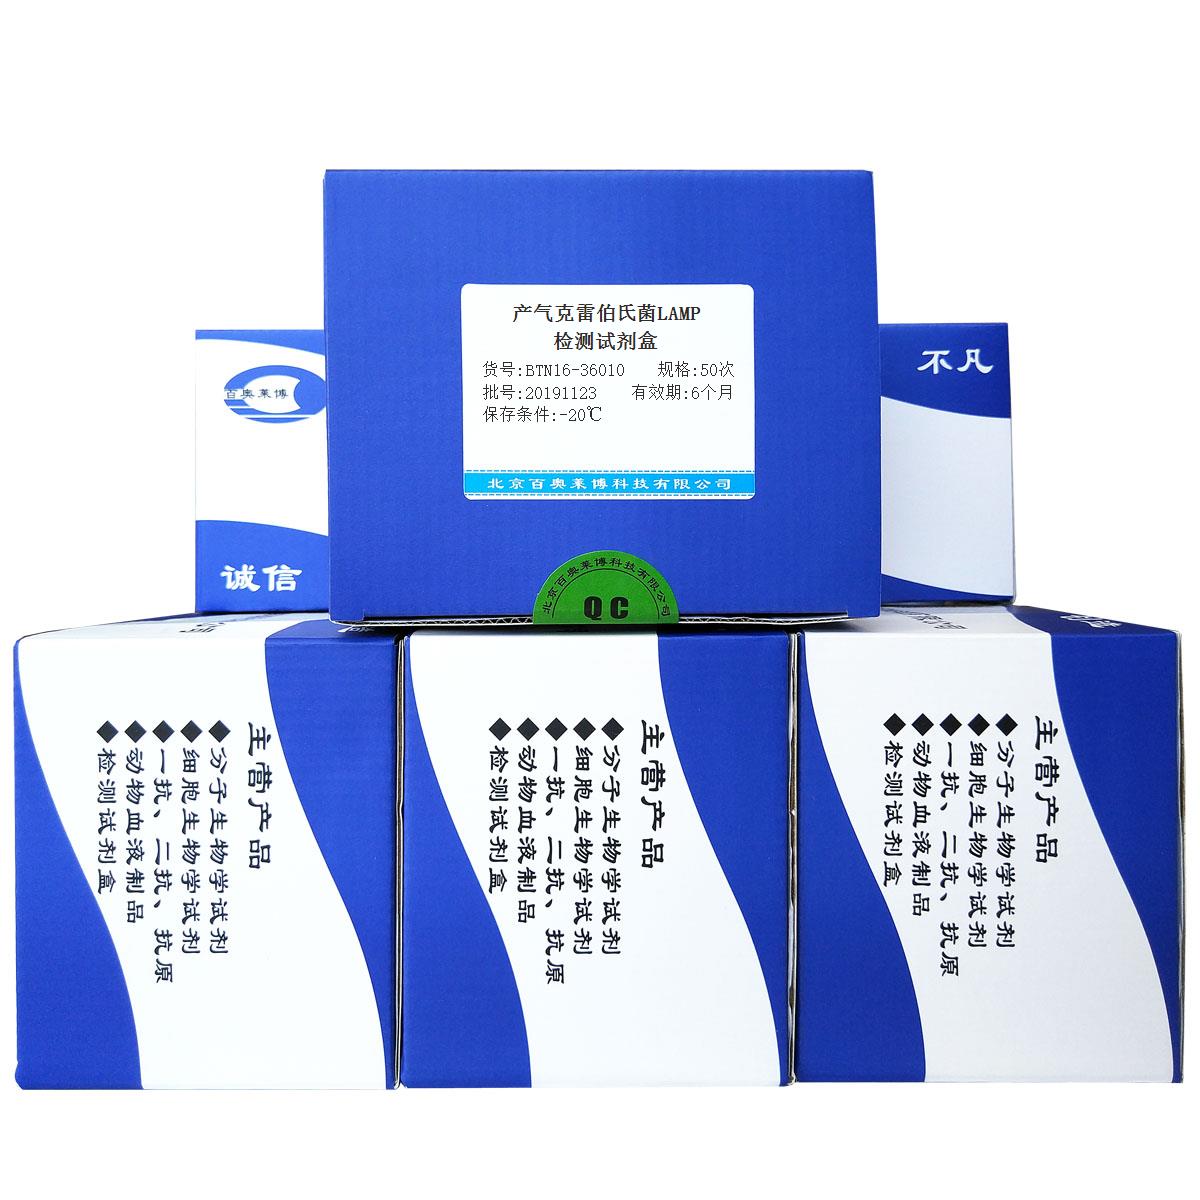 产气克雷伯氏菌LAMP检测试剂盒北京供应商